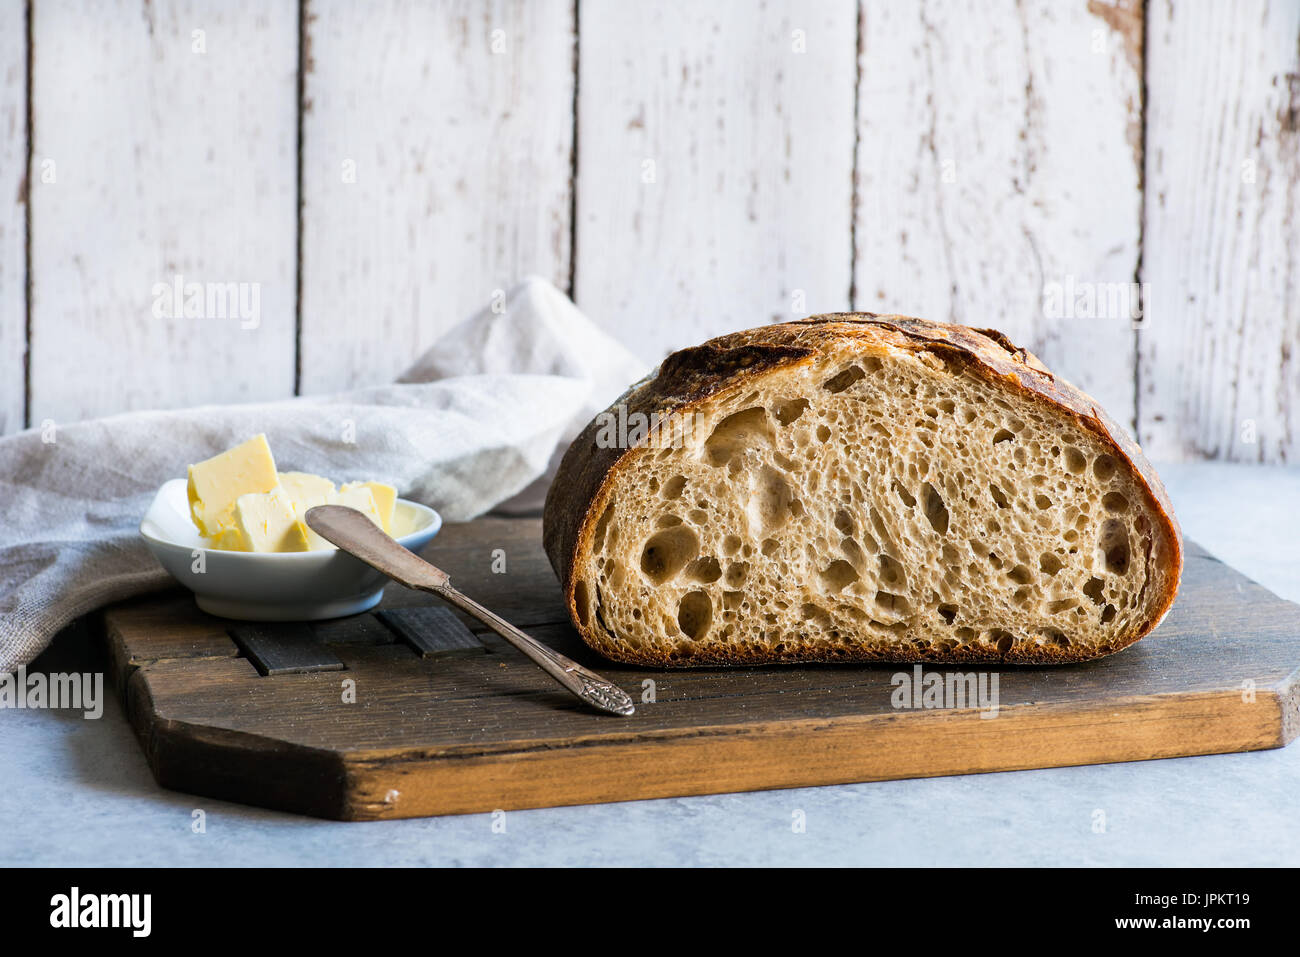 Pan de grano entero caseras pan de masa fermentada de trigo sobre un fondo claro, horizontal Foto de stock